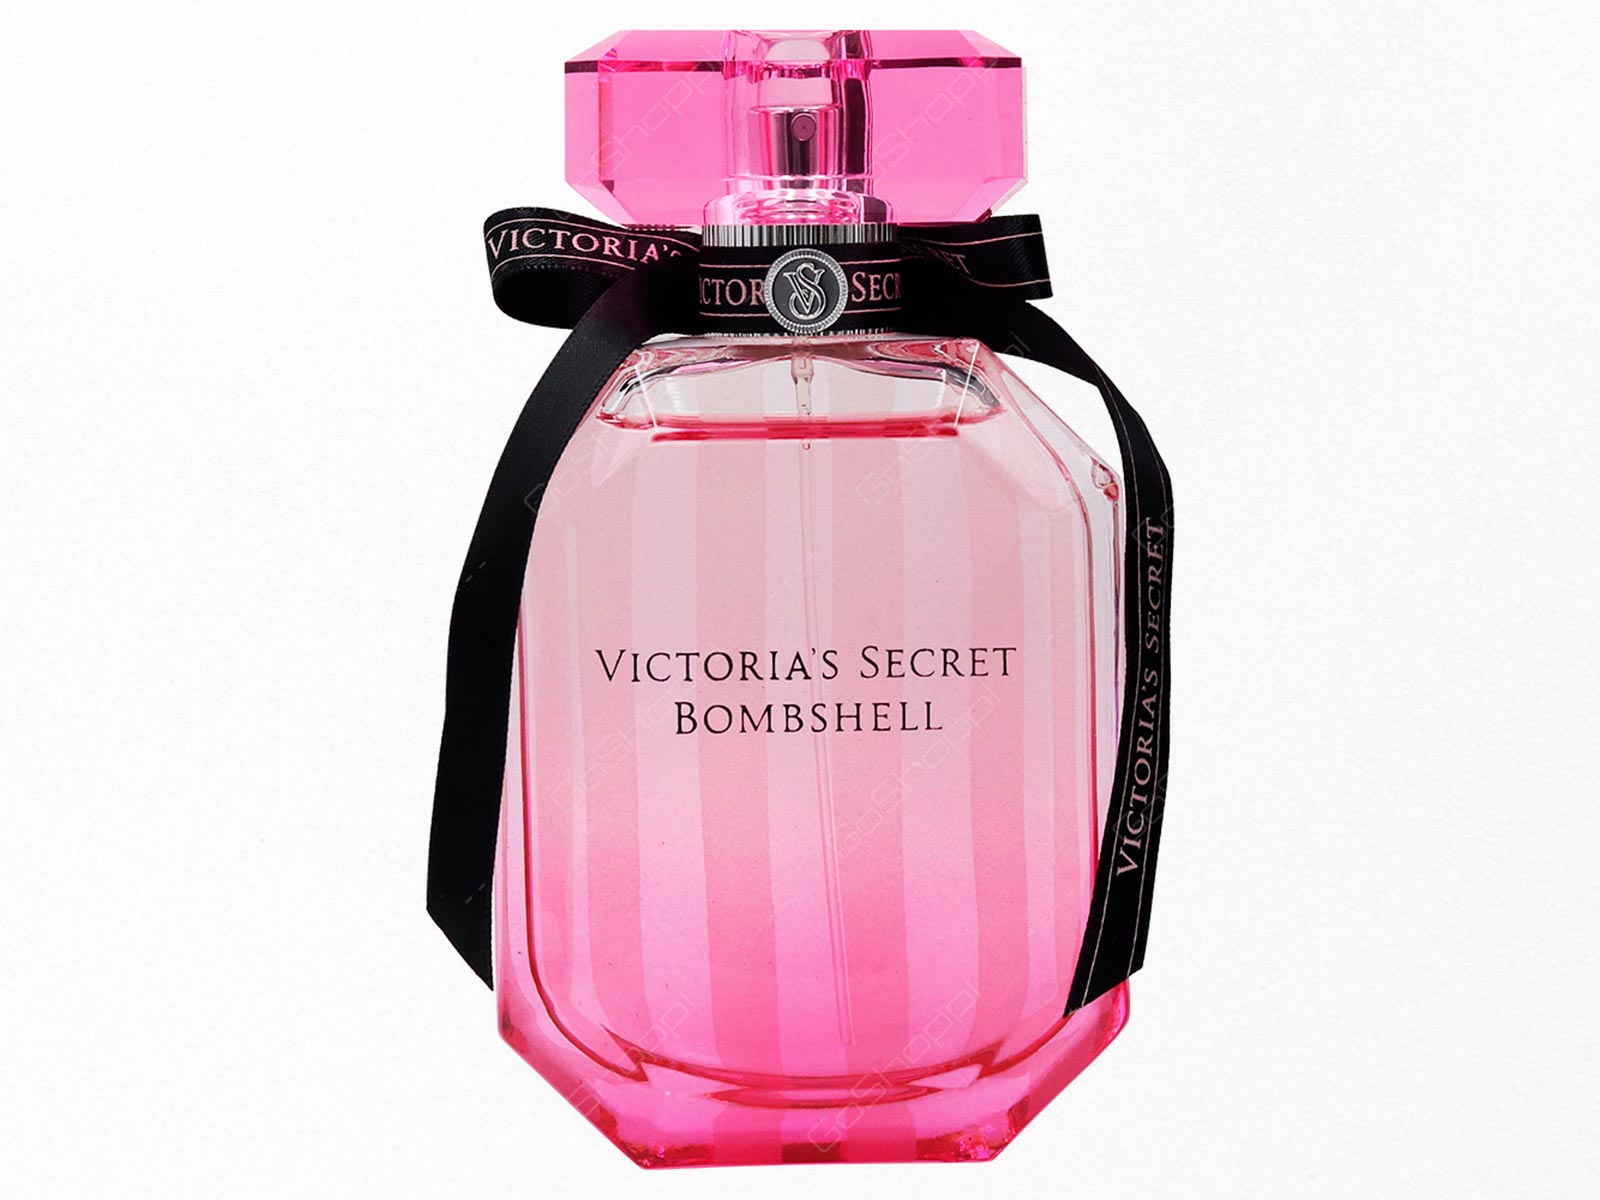 Este perfume de Victoria’s Secret repele los insectos